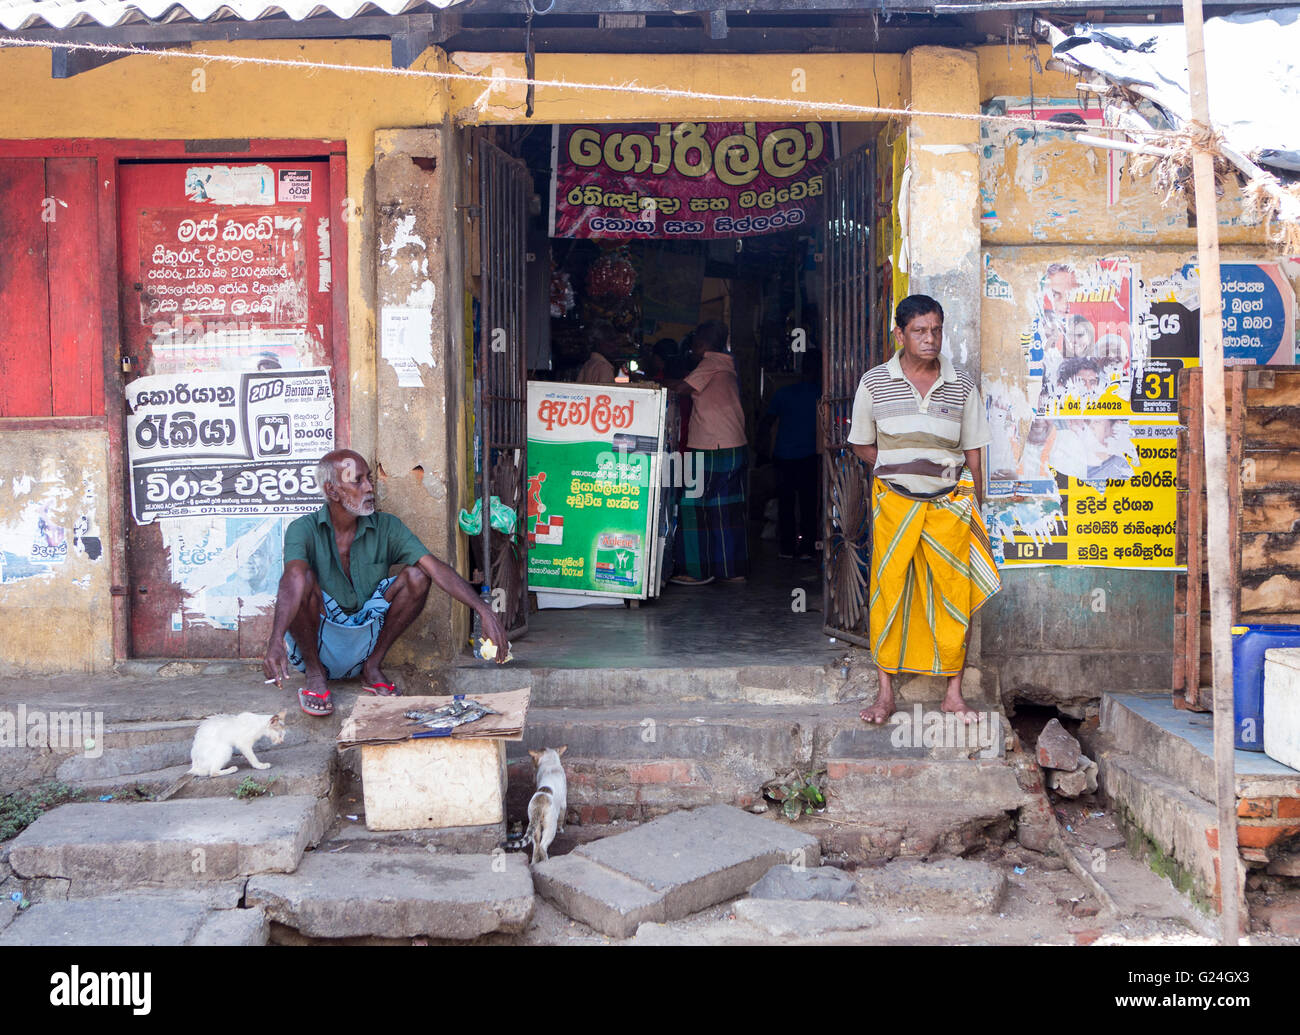 , Ville de Tangalle dans district de Hambantota, Province du Sud, Sri Lanka. Scène de rue - 2 hommes debout dans un bus près de l'embrasure de la stati Banque D'Images